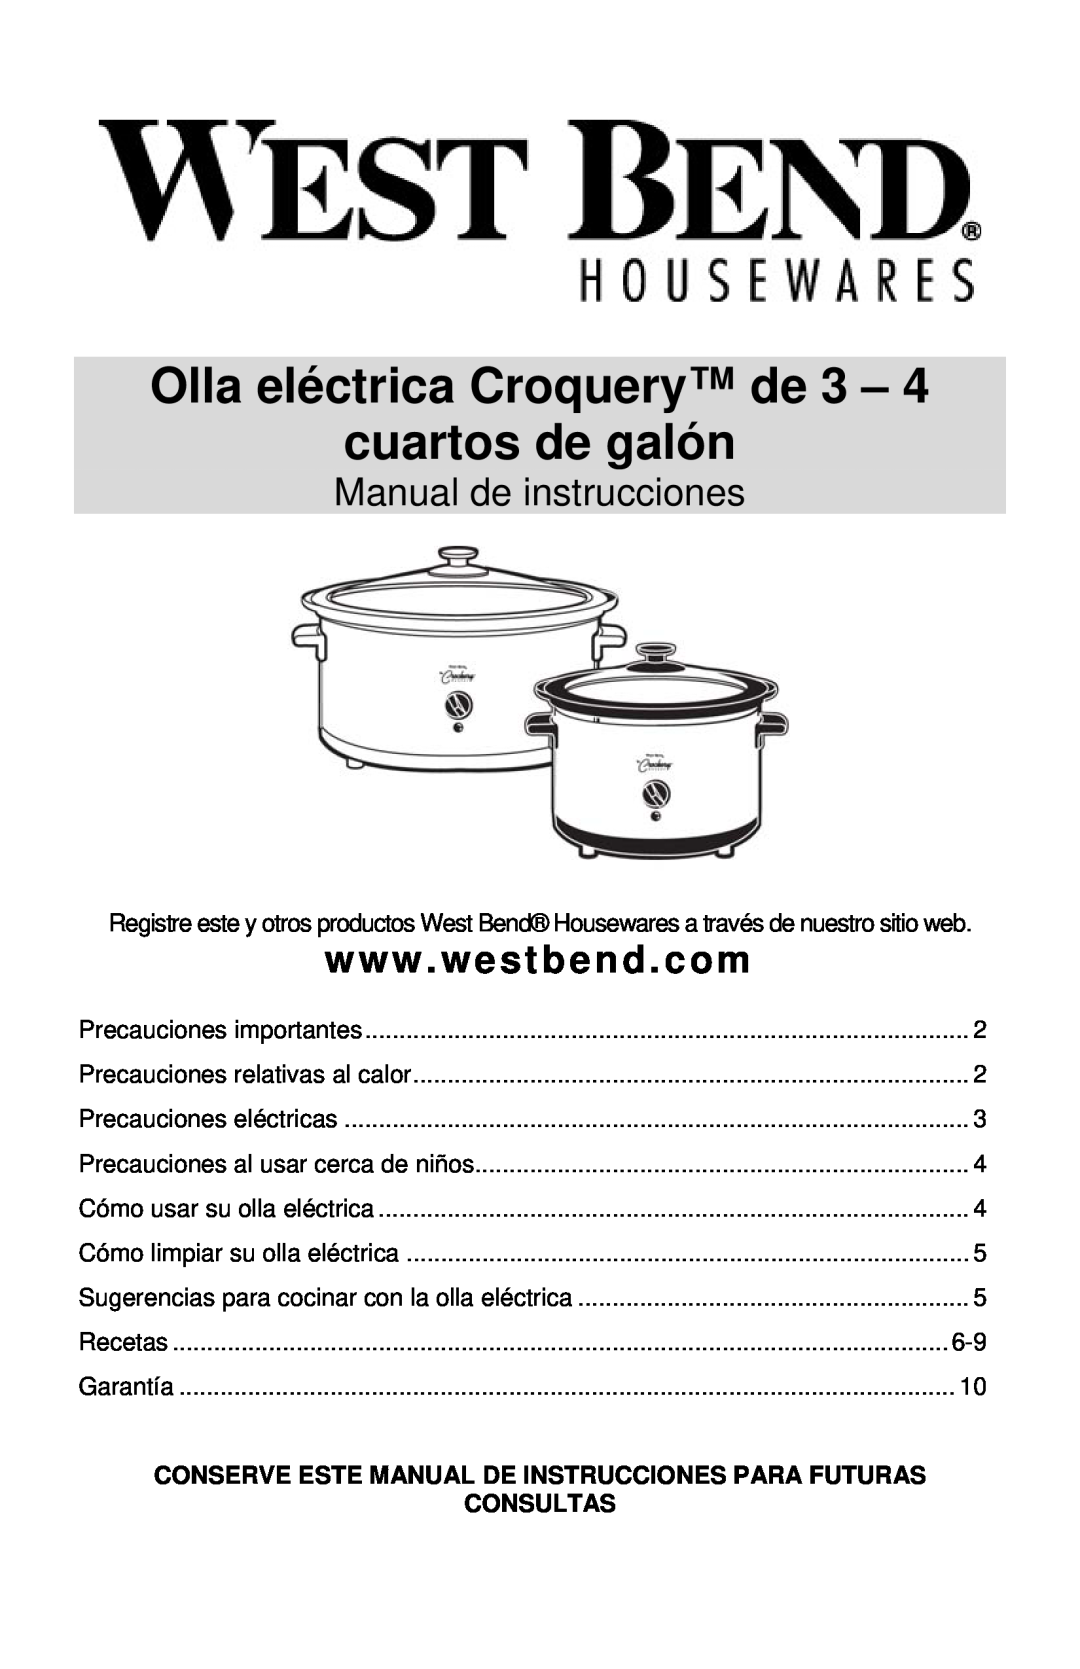 West Bend Cooker instruction manual Olla eléctrica Croquery de 3 - cuartos de galón, Manual de instrucciones, Consultas 